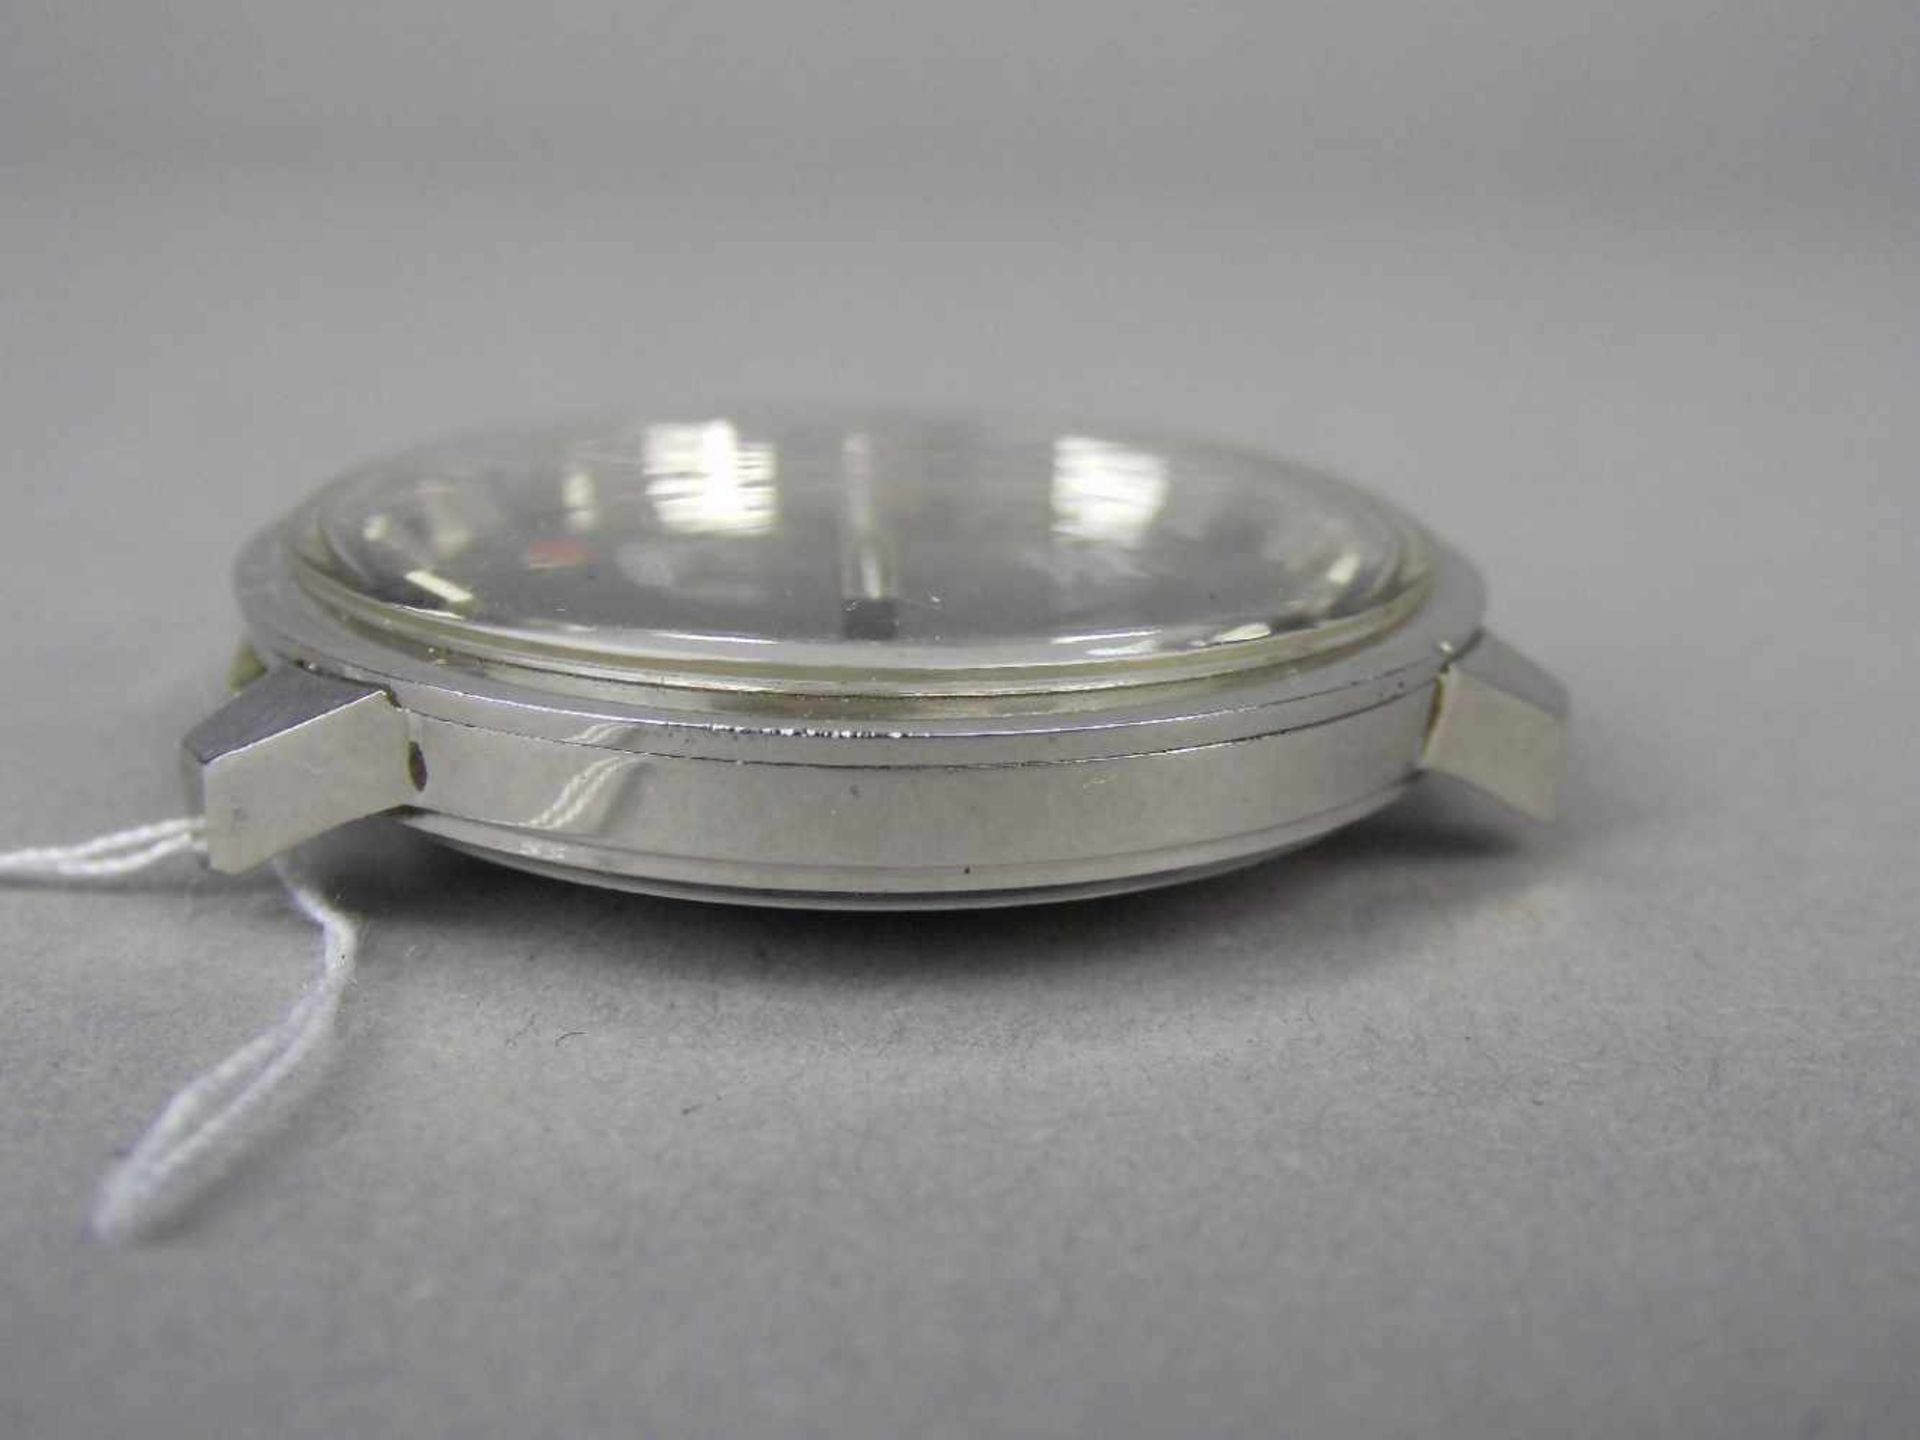 VINTAGE ARMBANDUHR: ROAMER MUSTANG / wristwatch, 1960er / 1970er Jahre, Manufaktur Roamer / Schweiz. - Image 3 of 6